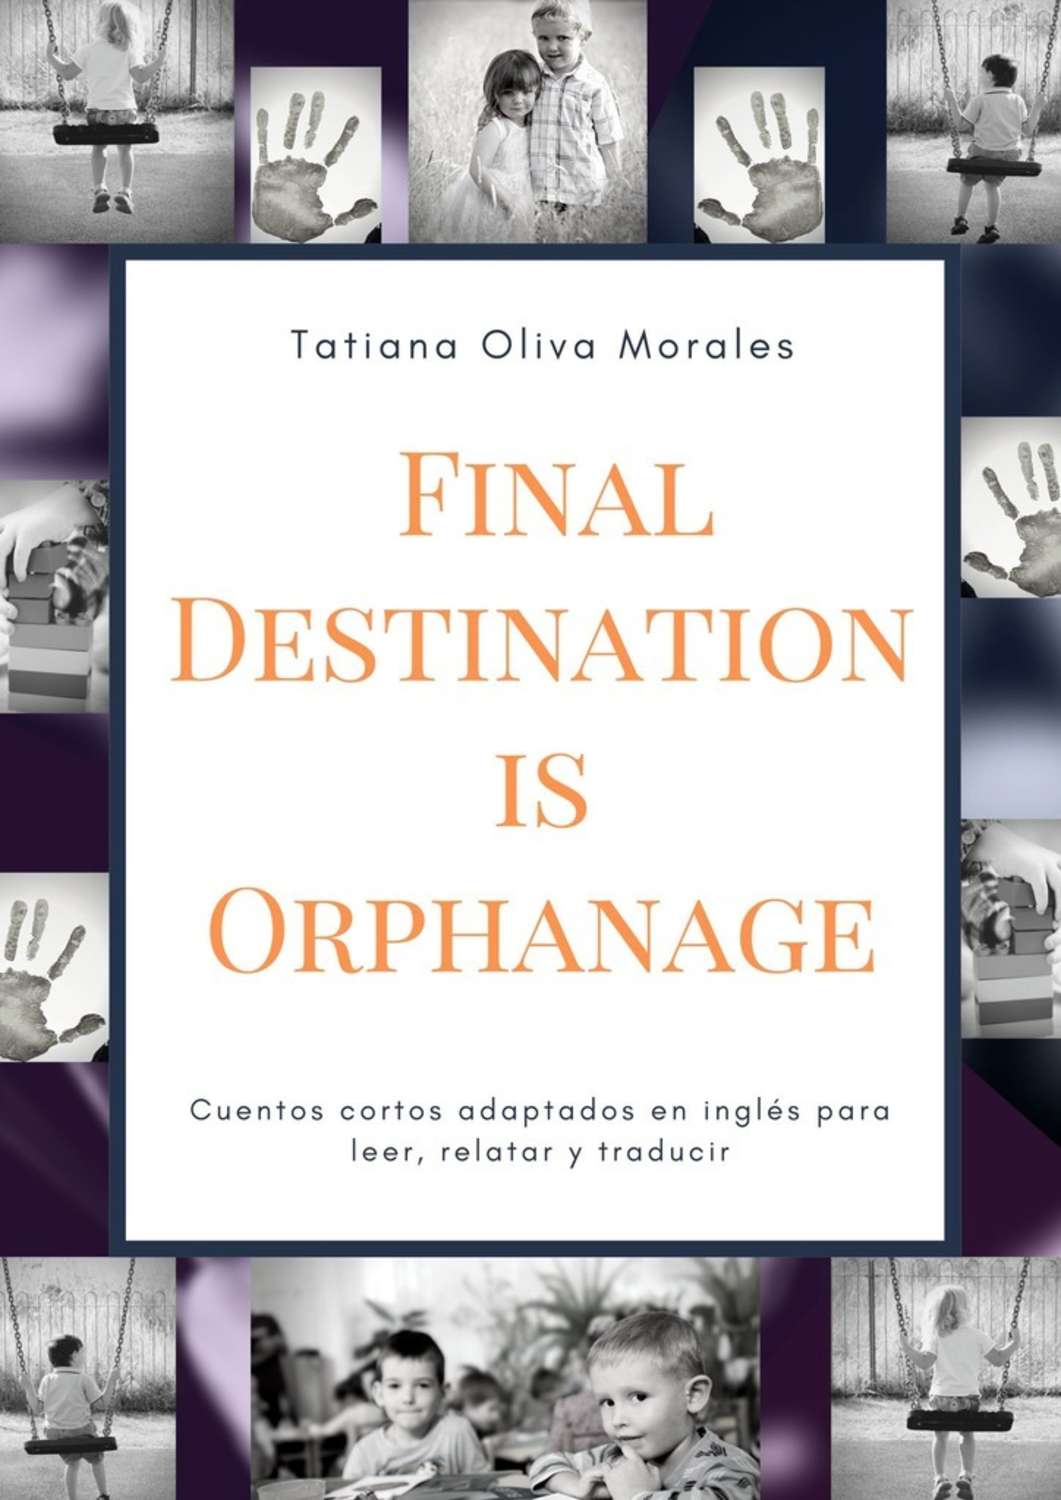 tatiana-oliva-morales-final-destination-is-orphanage-cuentos-cortos